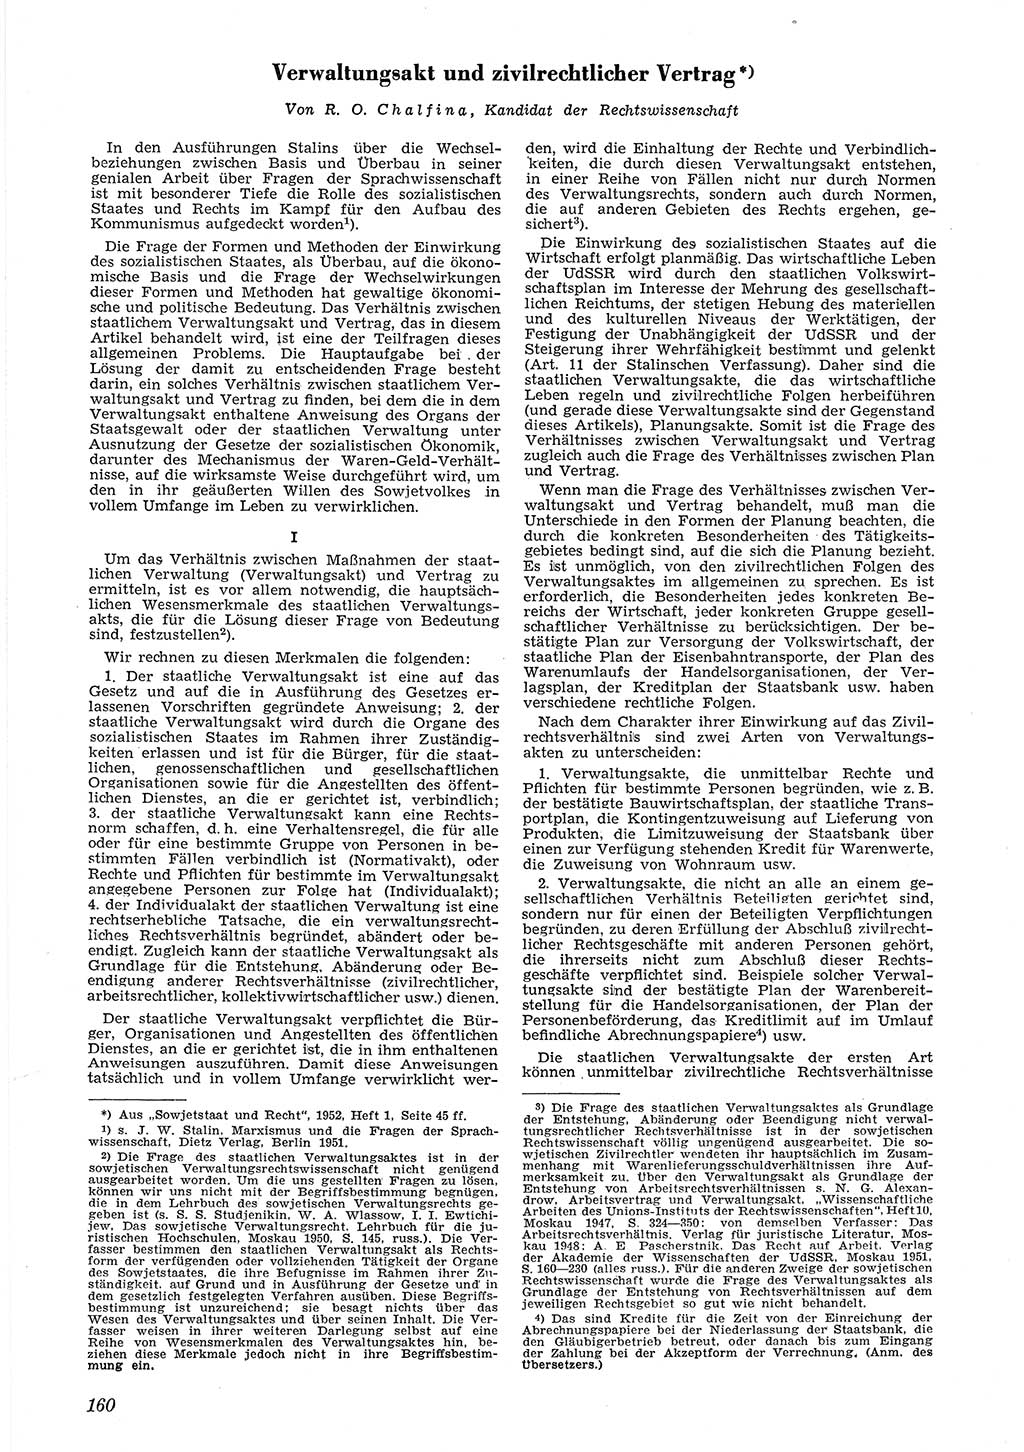 Neue Justiz (NJ), Zeitschrift für Recht und Rechtswissenschaft [Deutsche Demokratische Republik (DDR)], 6. Jahrgang 1952, Seite 160 (NJ DDR 1952, S. 160)